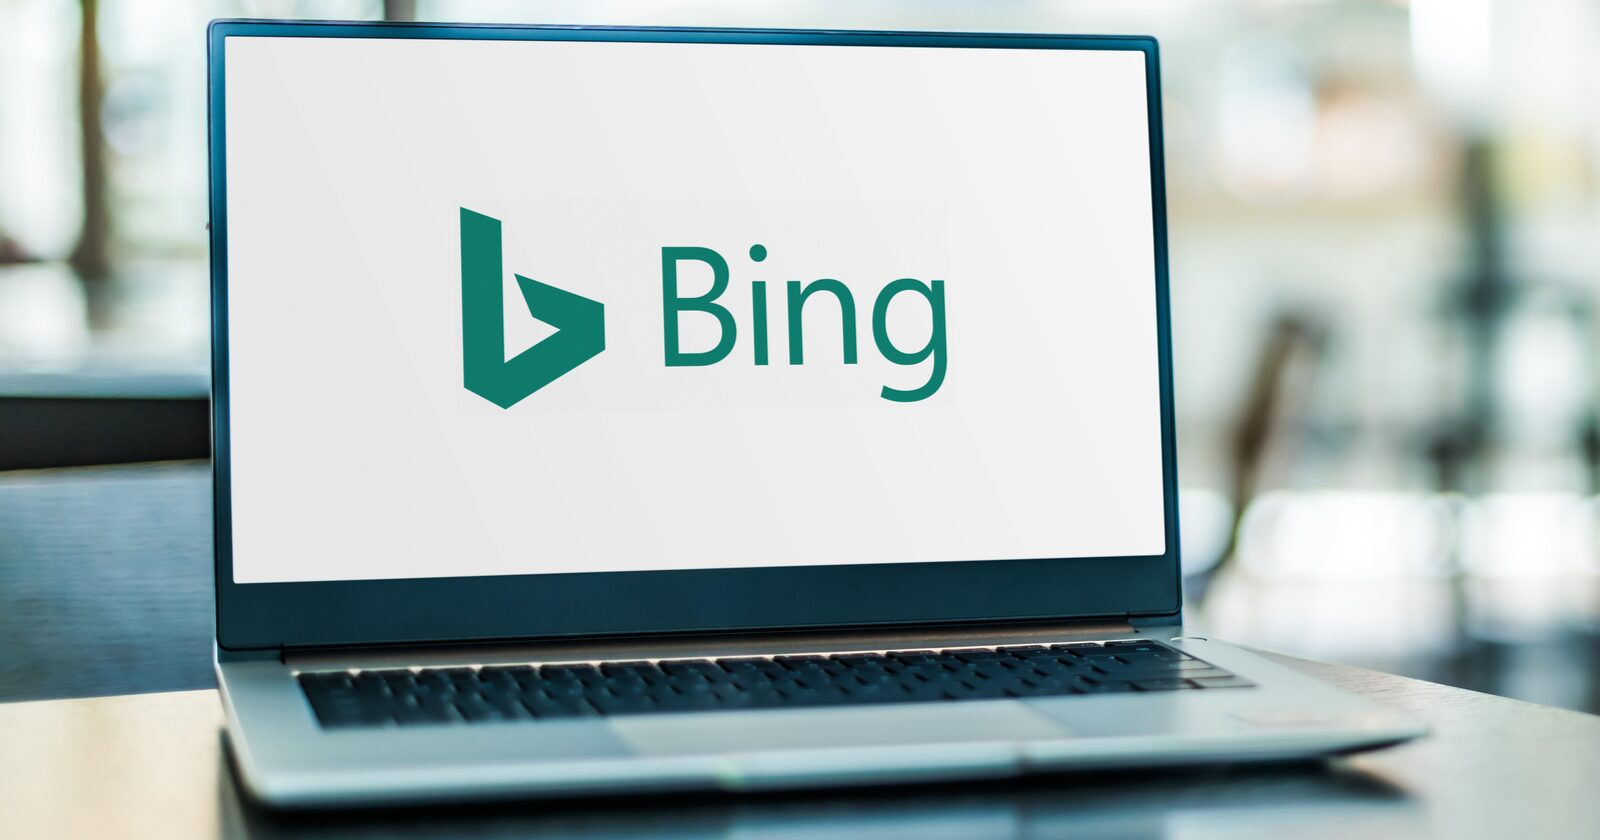 L’API de soumission de contenu Bing est désormais ouverte à tous